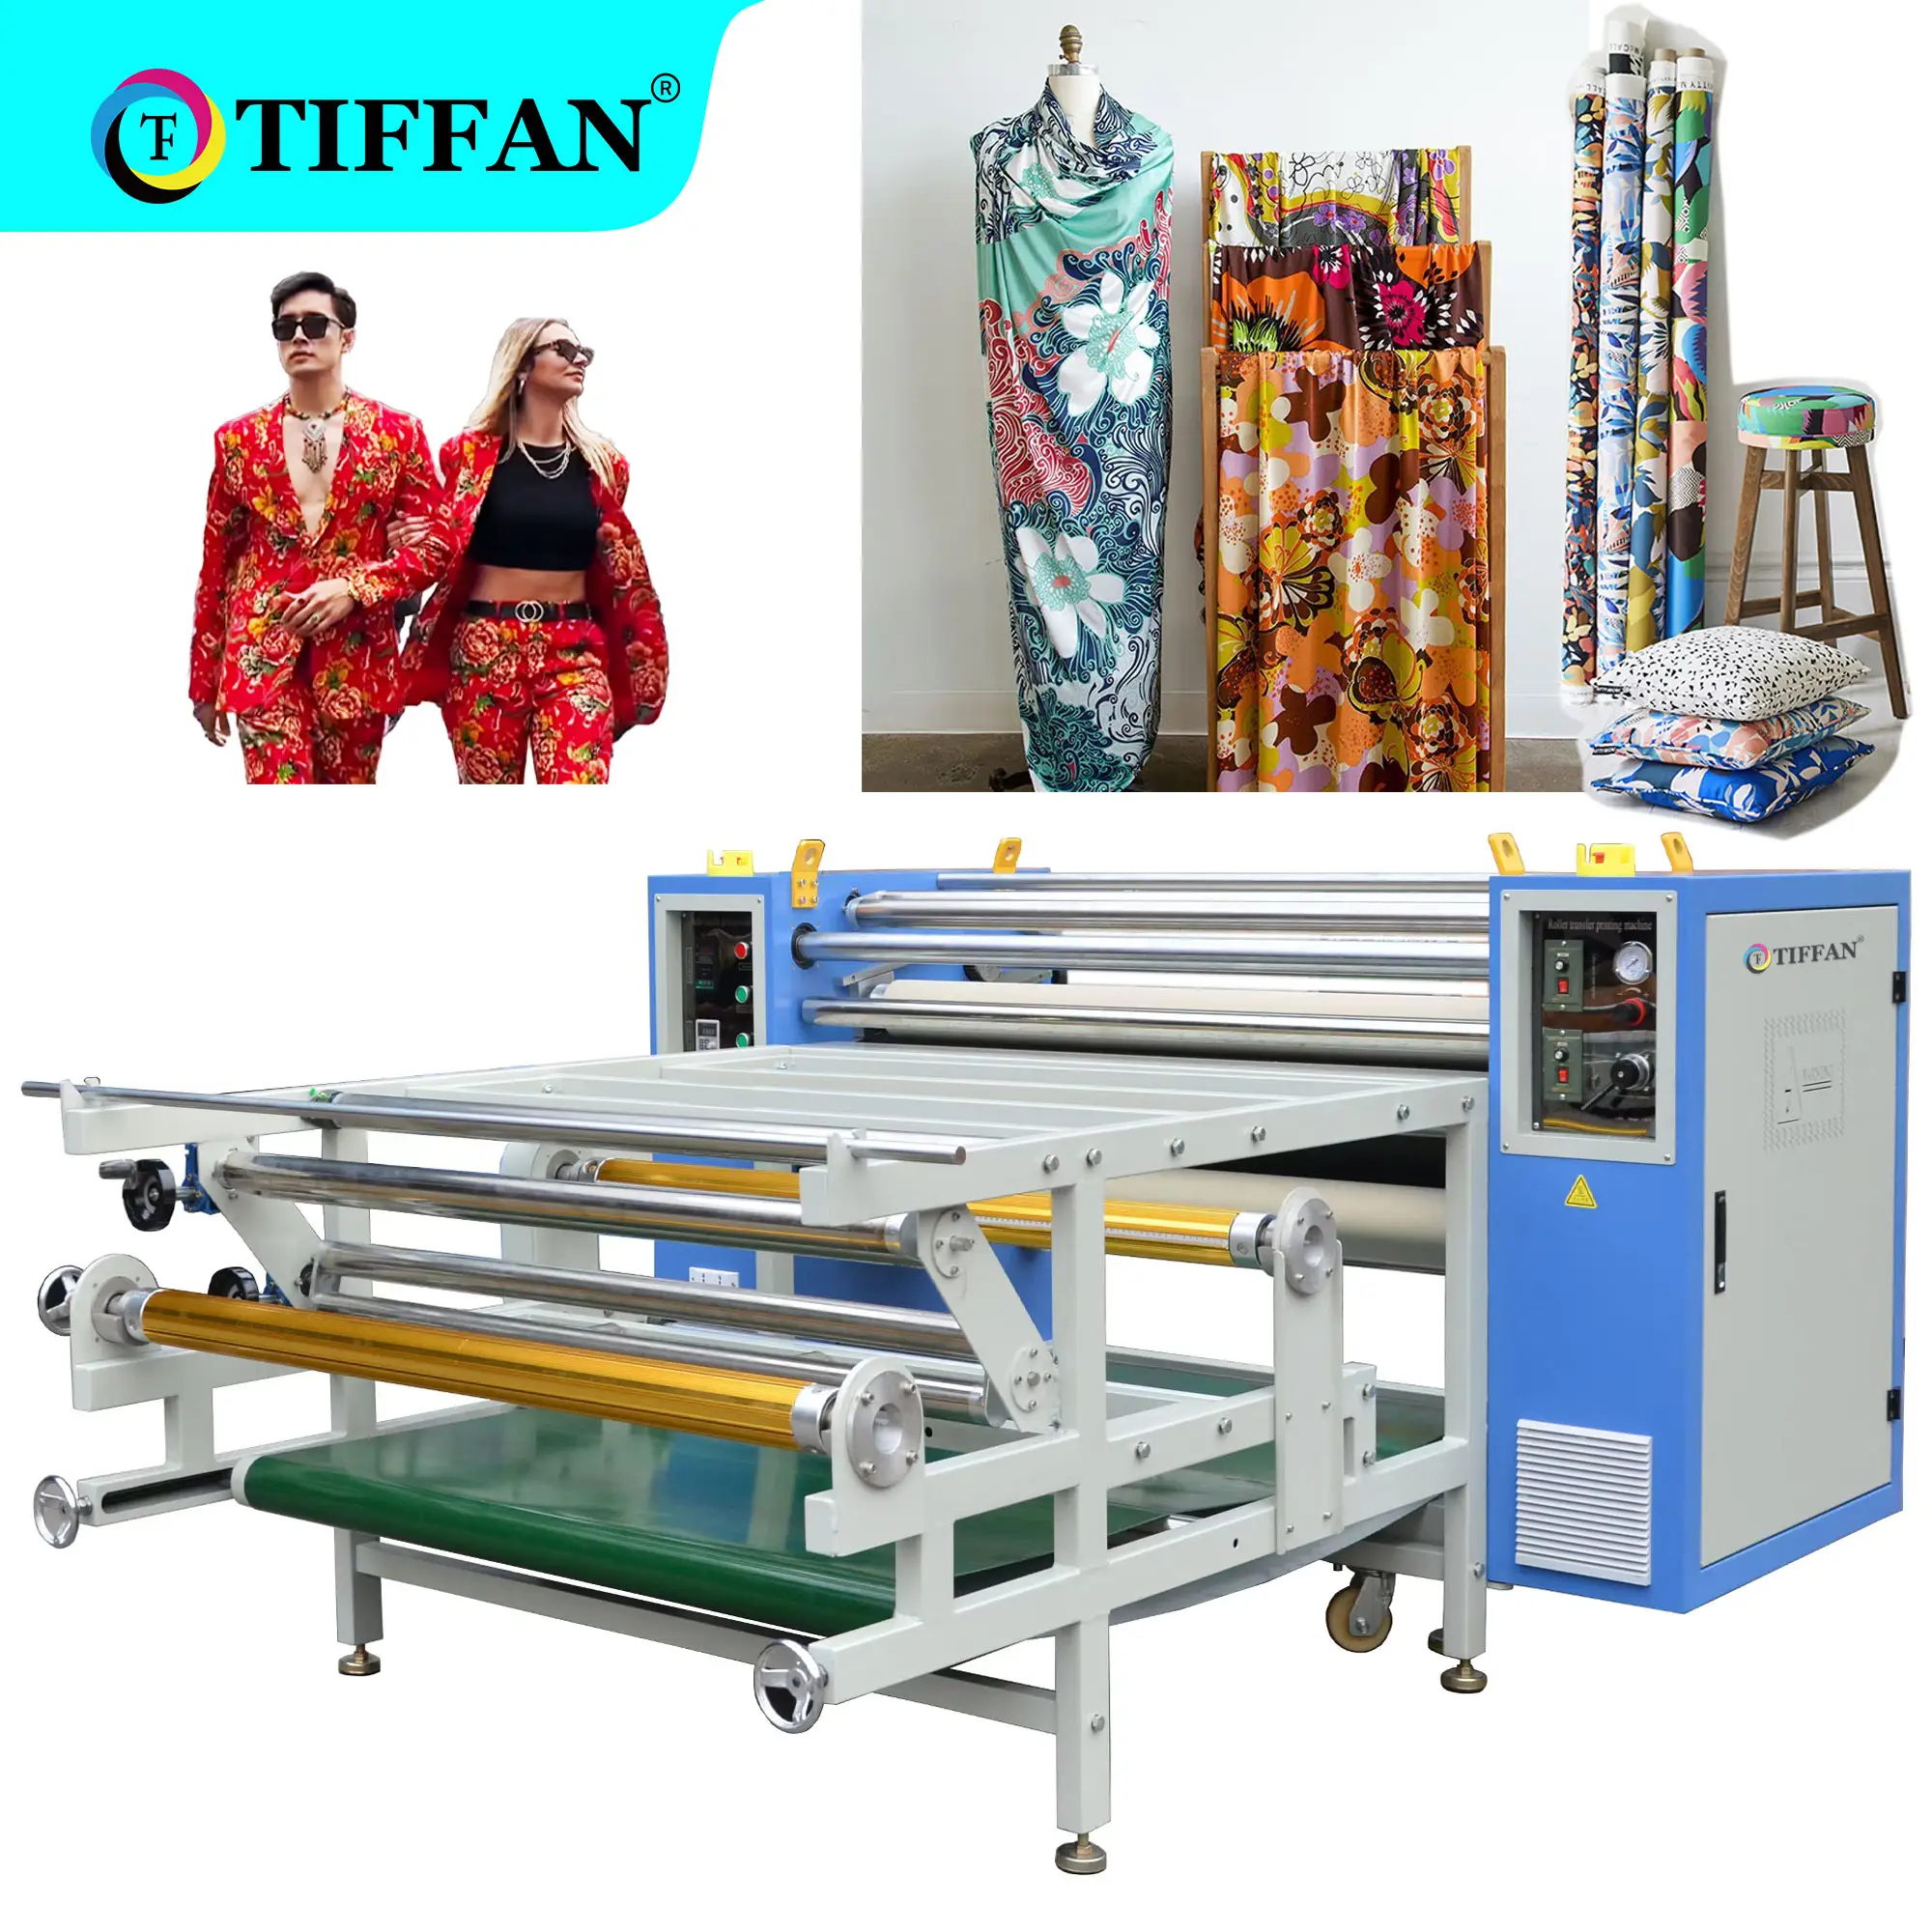 Tian-máquina de transferencia de calor para tela textil, prensa de calor de alfombra giratoria con calendario, rollo a rollo, 30x170Cm